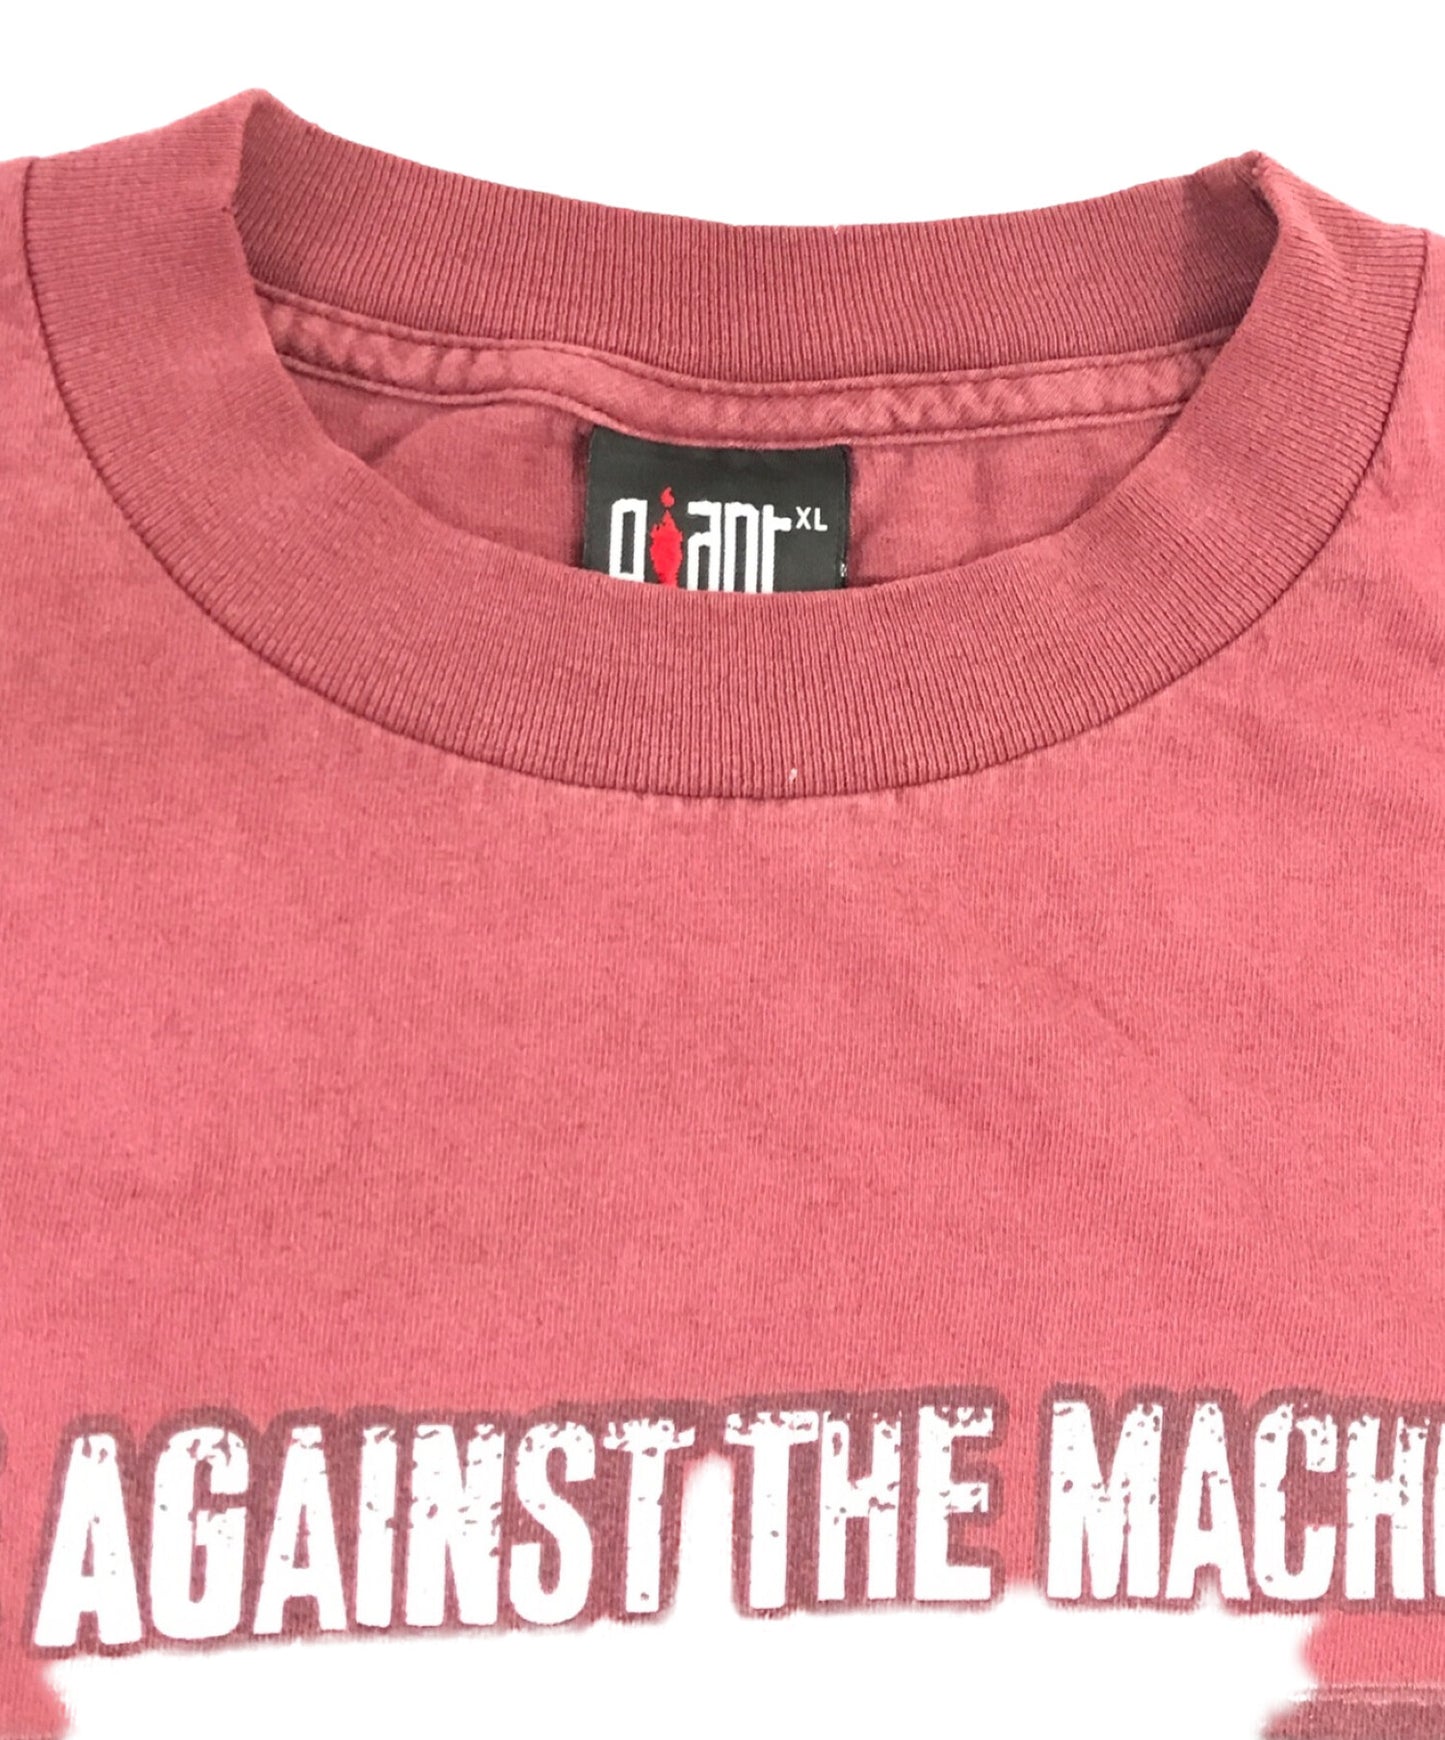 Rage Against the Machine 90 Quint Band Tour Tour Tour Tour Tour